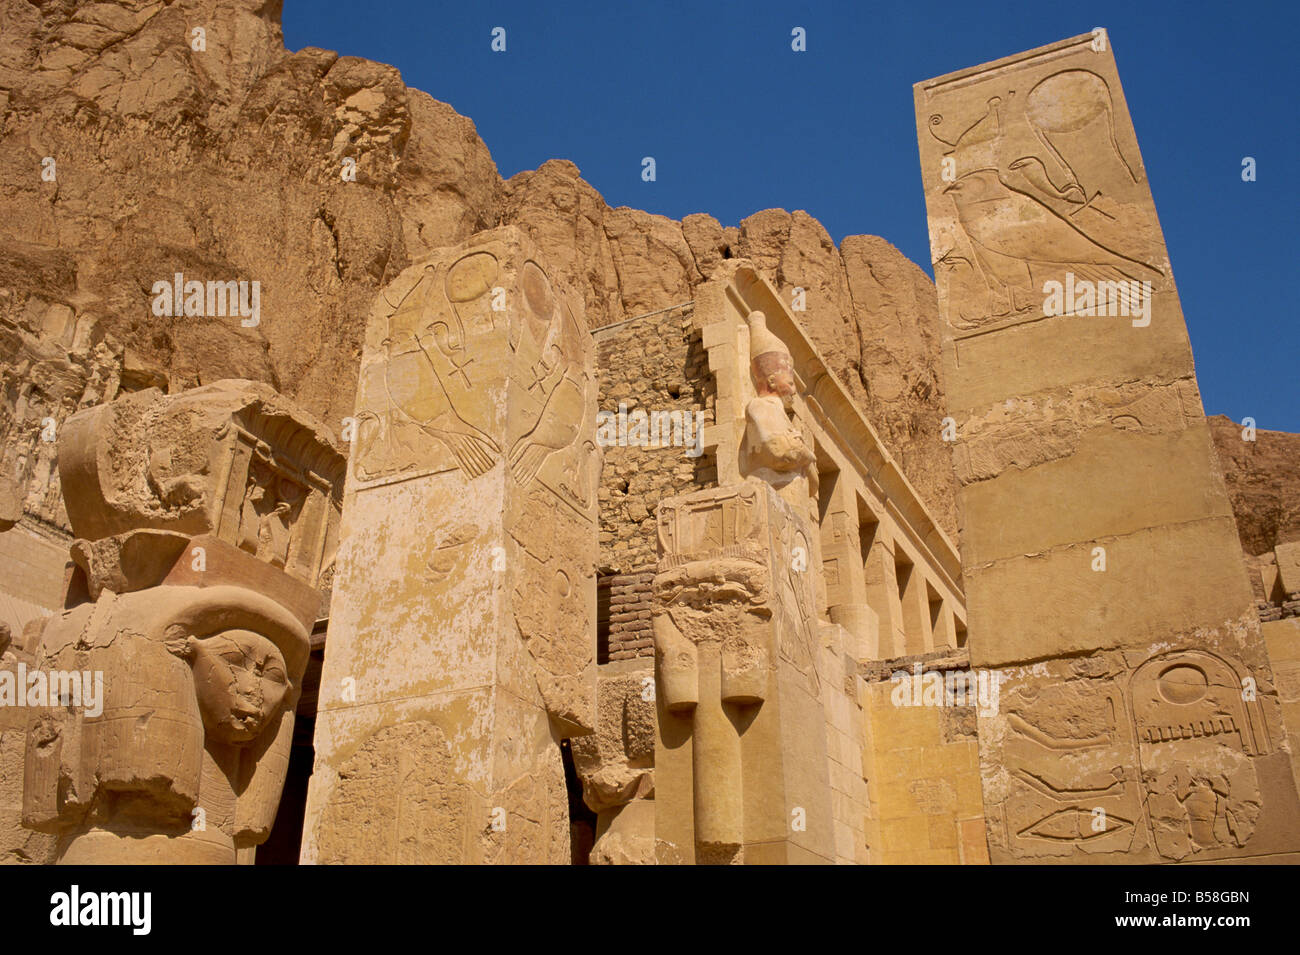 Cappella di Hathor, Hathor di affrontare forme capitali sulla Piazza Pilastri, Hatshepsut sul tempio di Deir el-Bahri, Tebe, Egitto Foto Stock